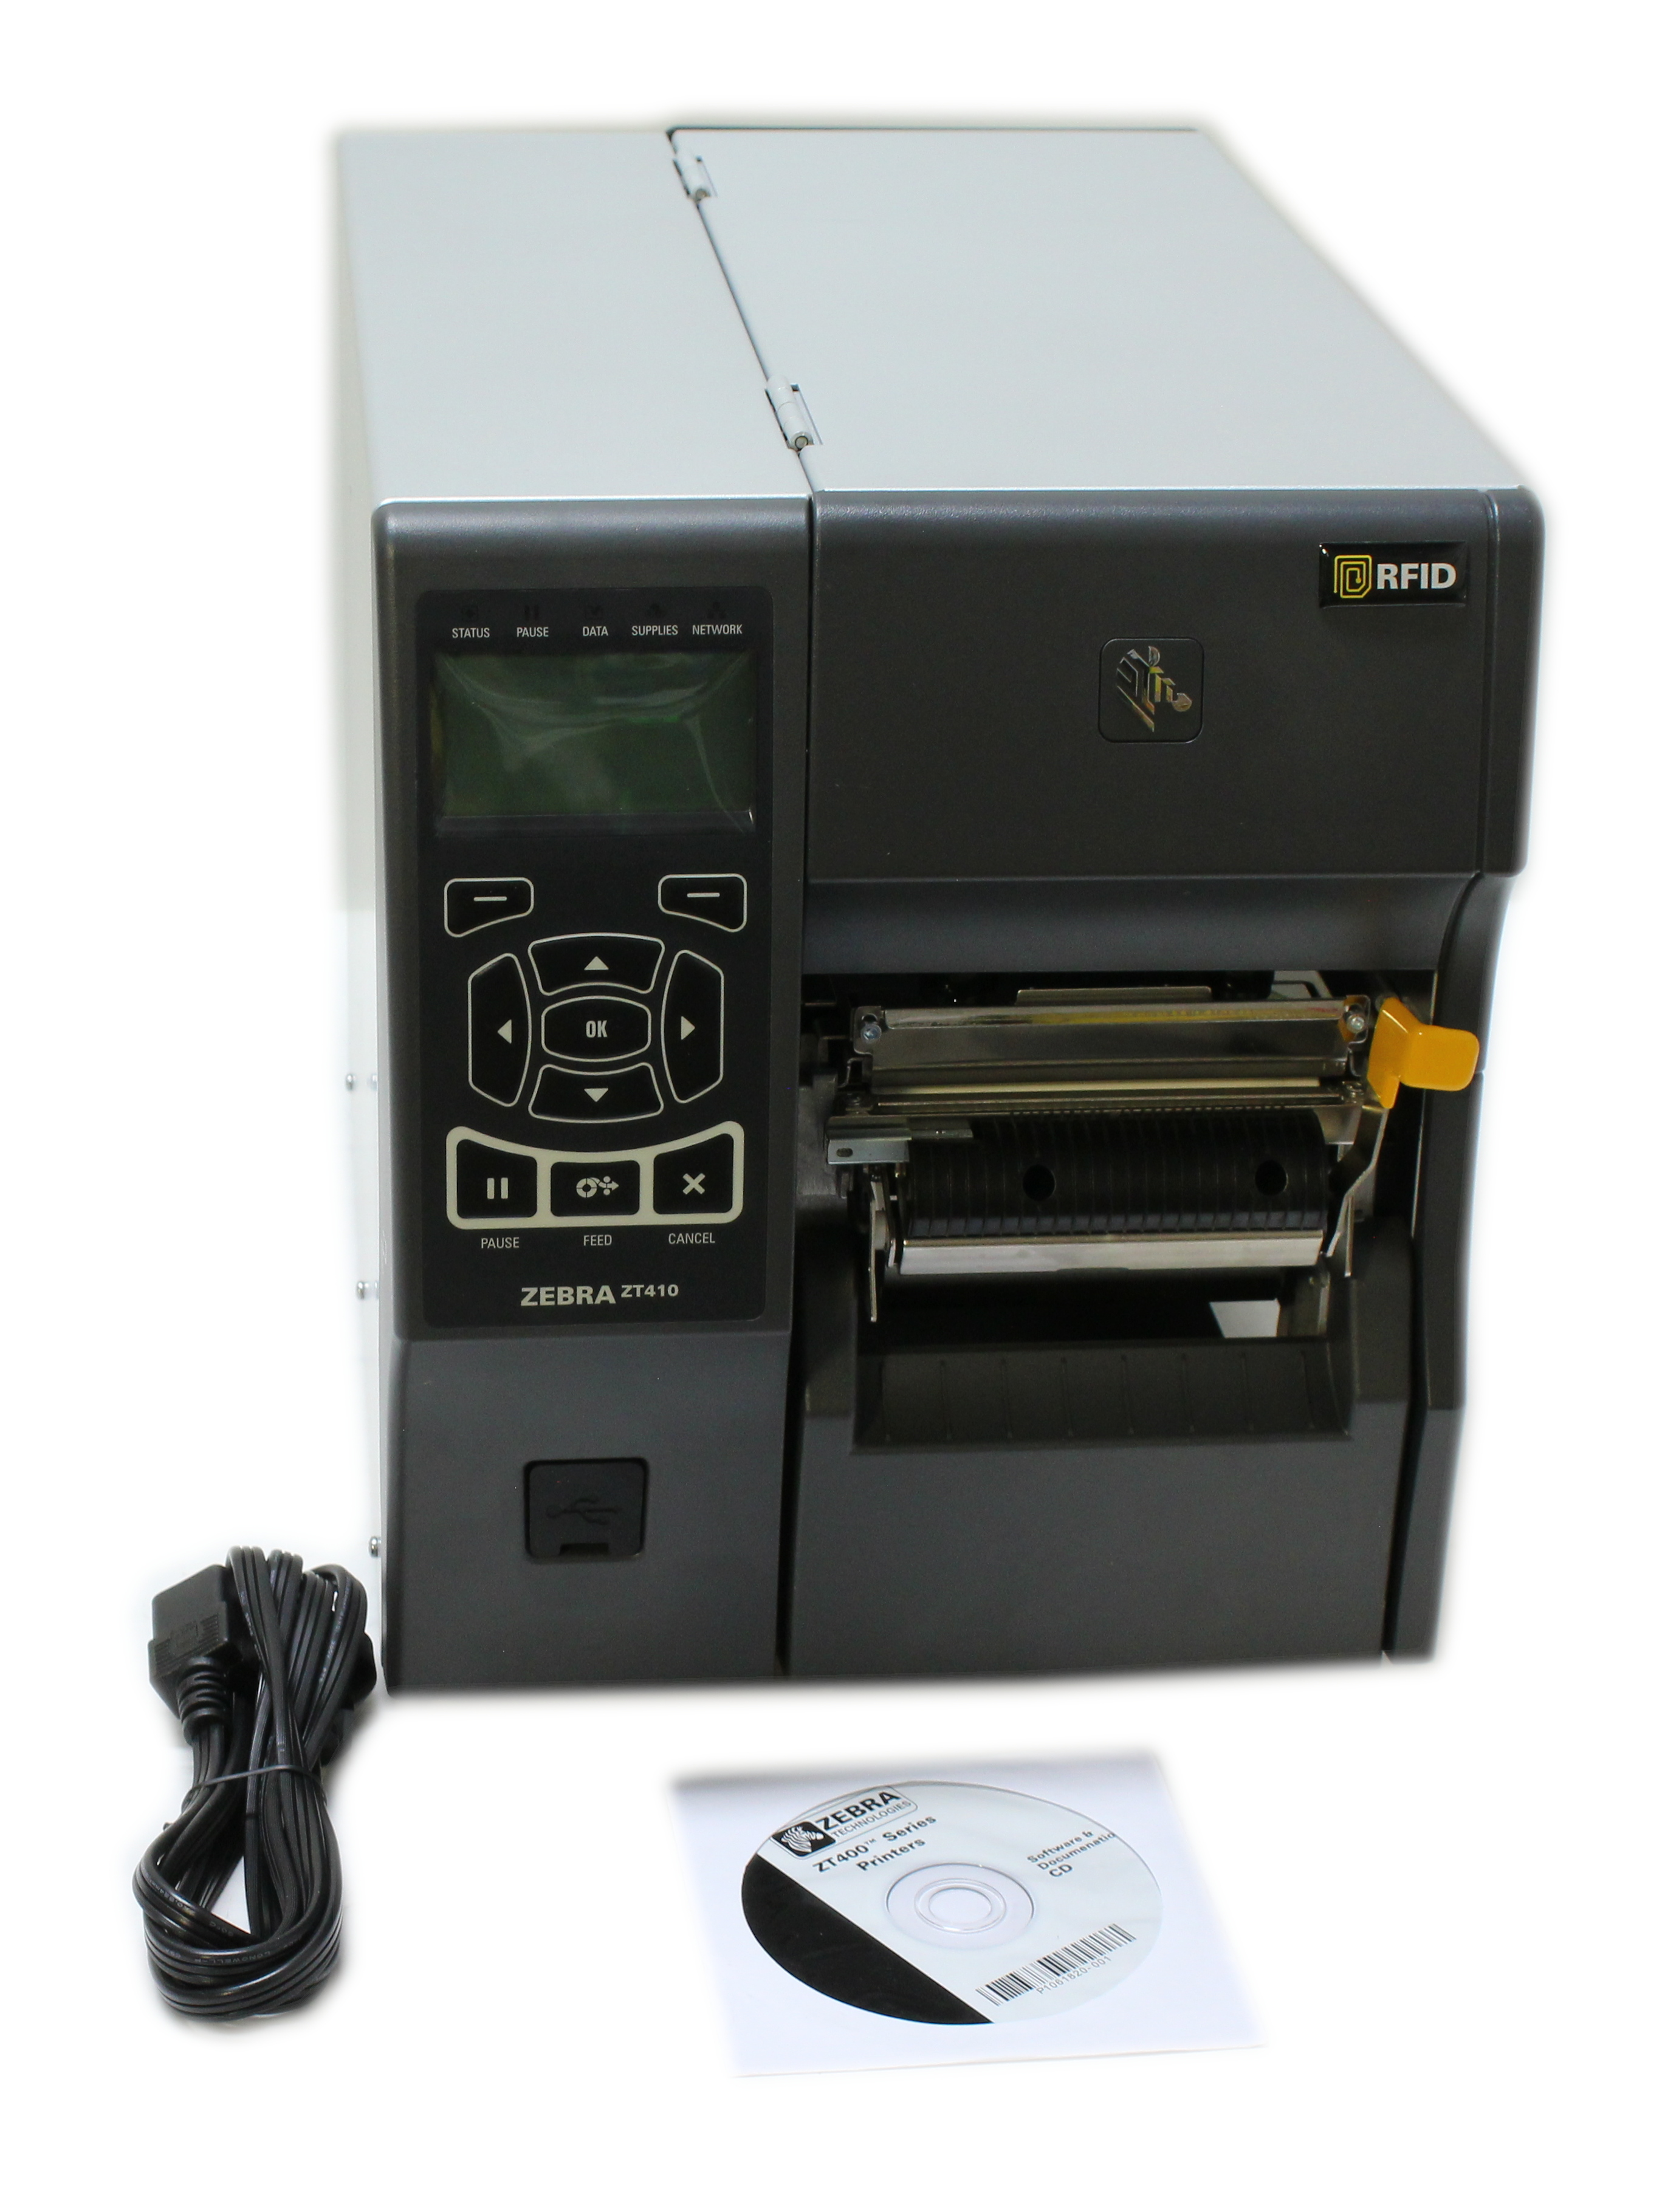 Zebra ZT410 Label Printer Monochrome Direct Thermal WiFi LAN ZT41042-T310062A - Click Image to Close